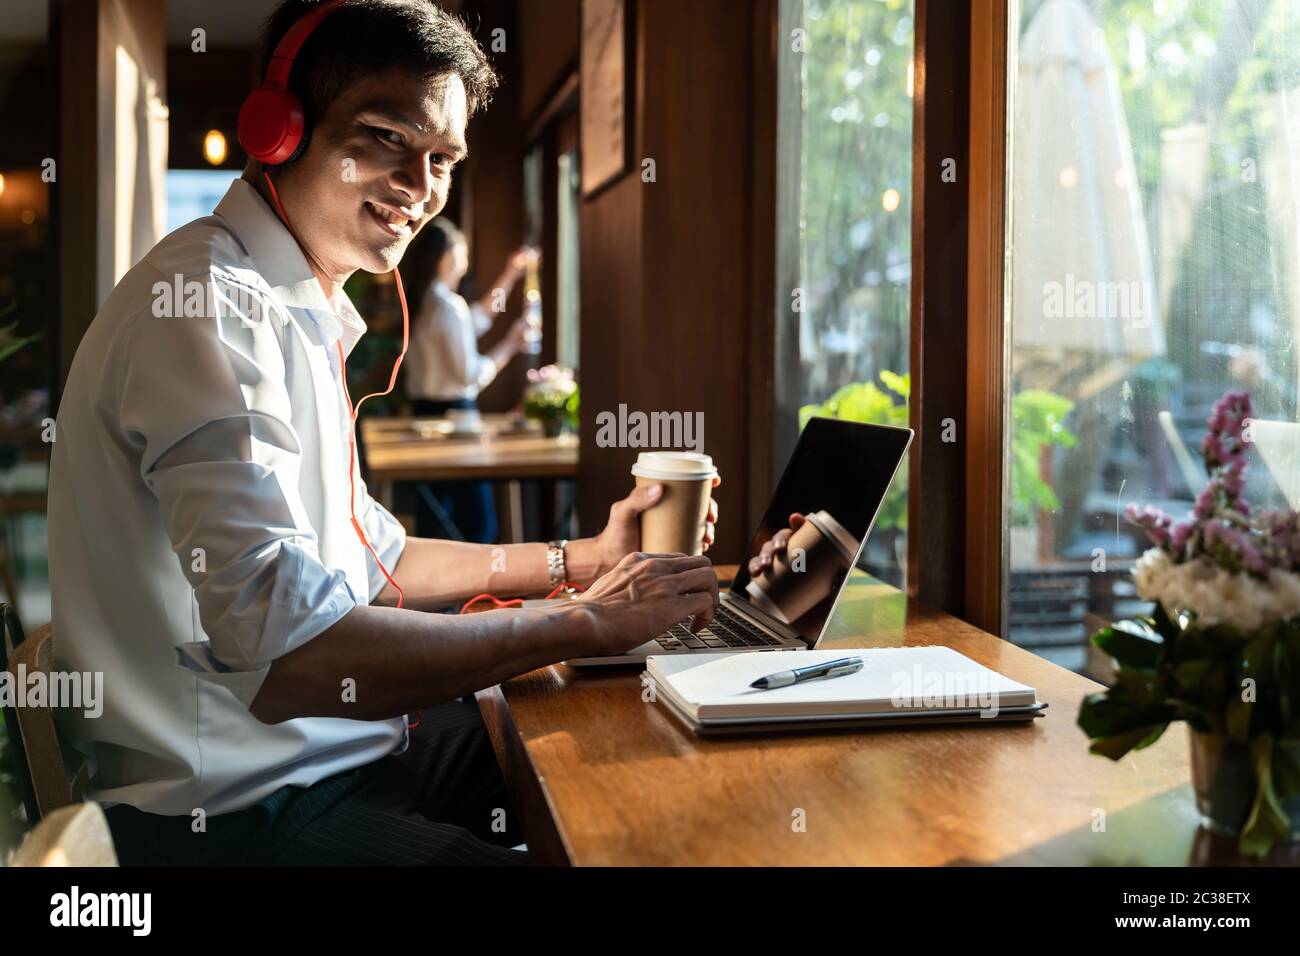 L'accent asian college student working with laptop in cafe la préparation de test ou examen. Banque D'Images